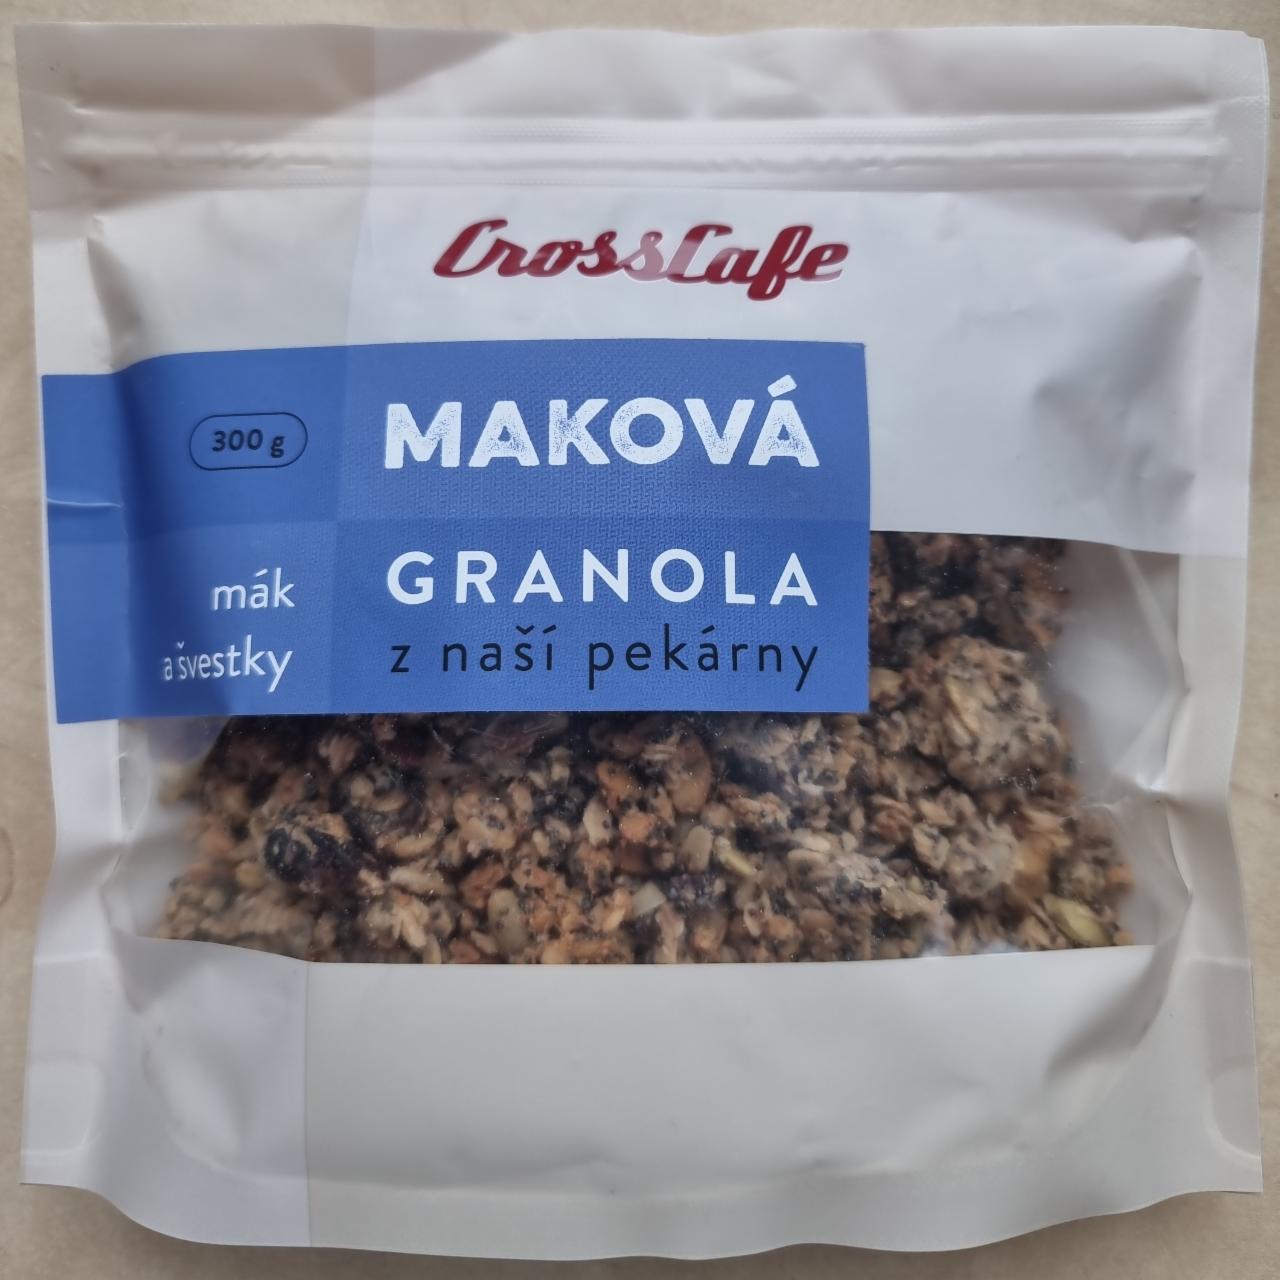 Fotografie - Maková granola z naší pekárny CrossCafe